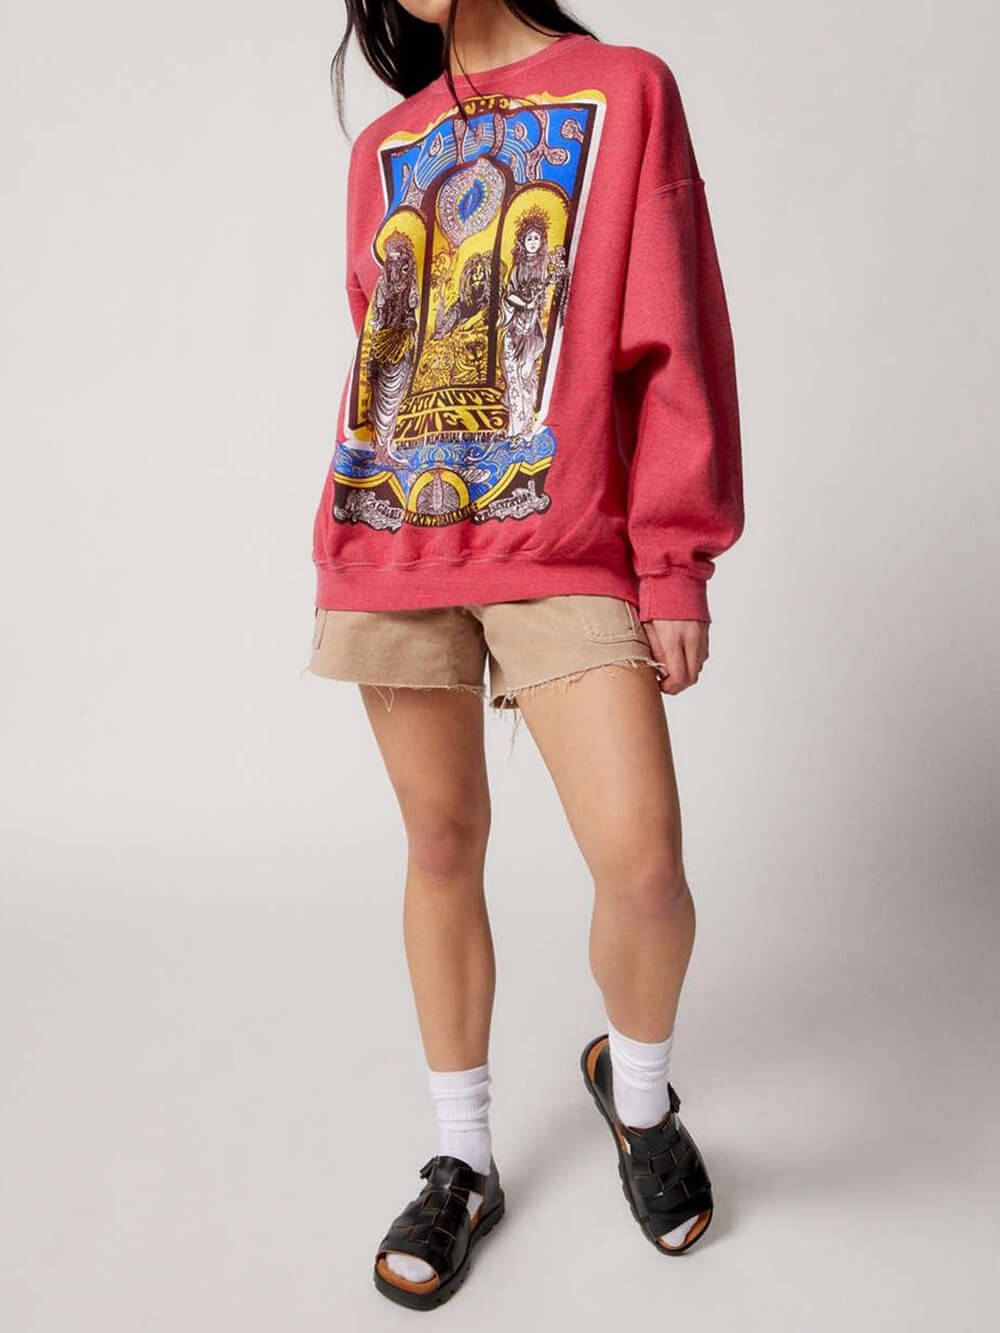 The Doors grafisk oversize sweatshirt